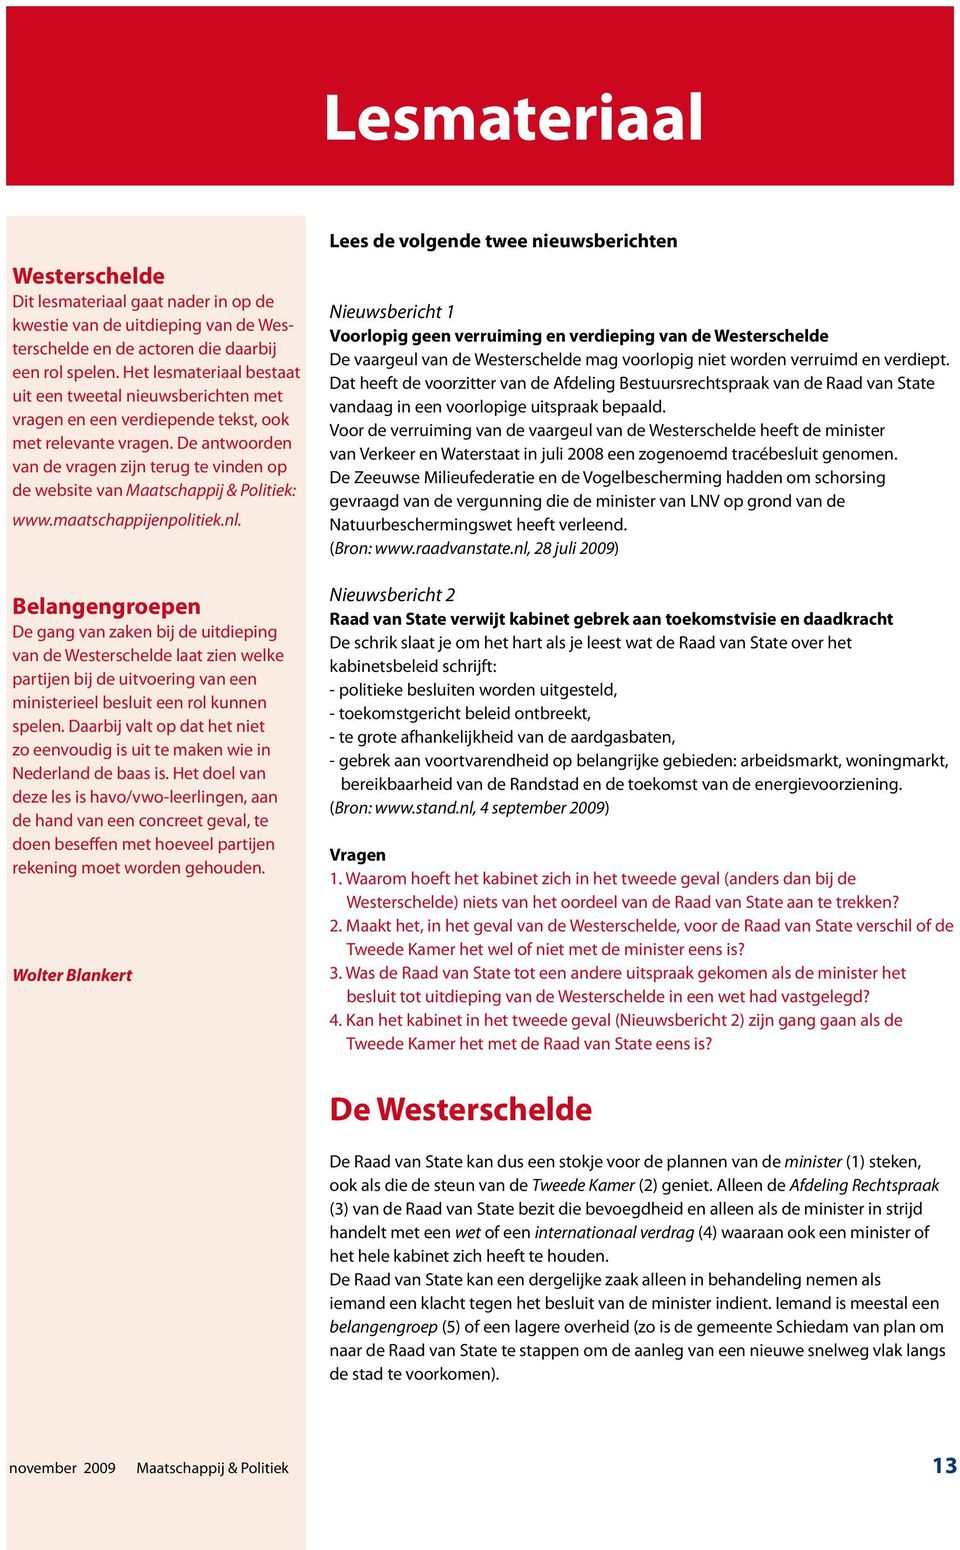 De antwoorden van de vragen zijn terug te vinden op de website van Maatschappij & Politiek: www.maatschappijenpolitiek.nl.